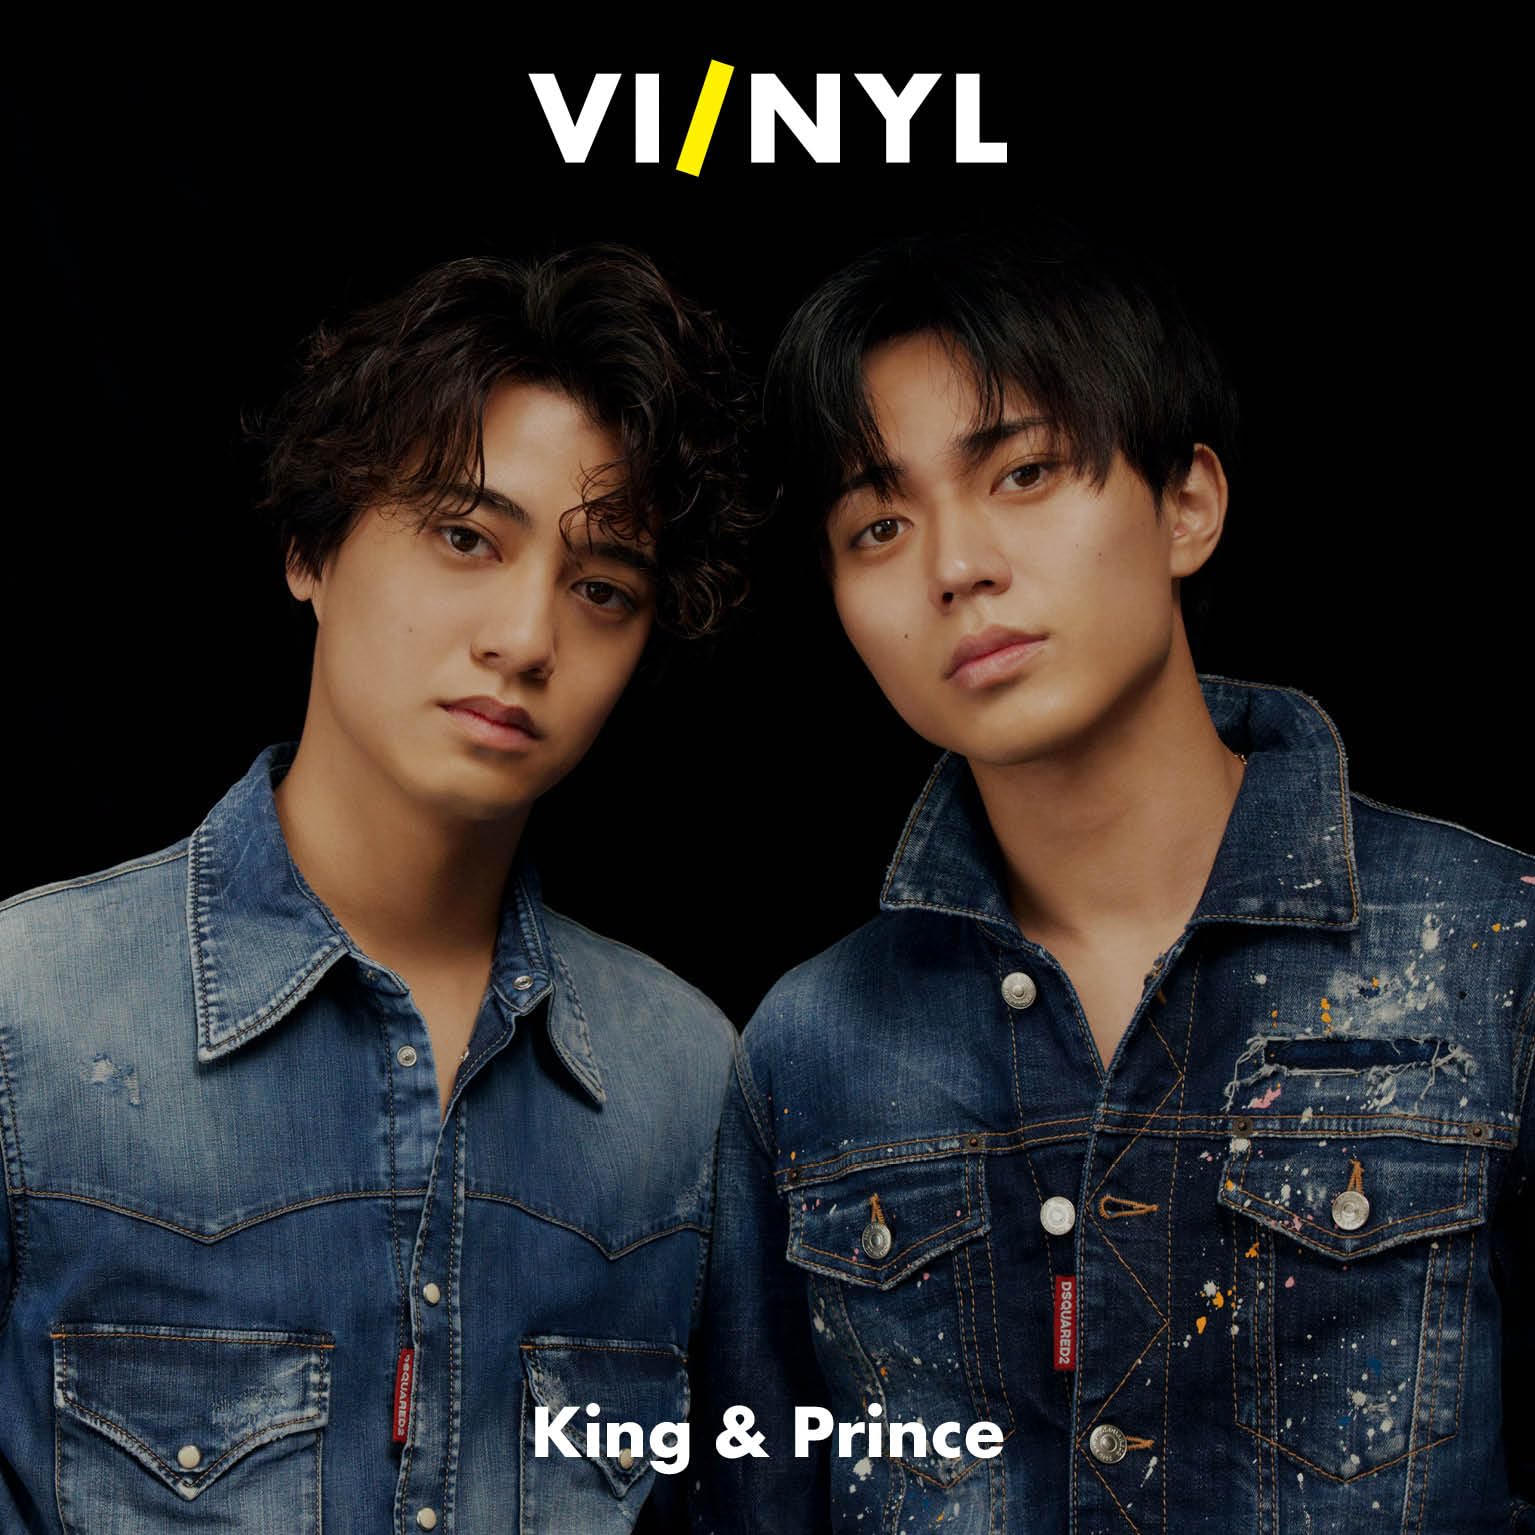 VI/NYL(ハ-イ&ナル) #013 King & Prince